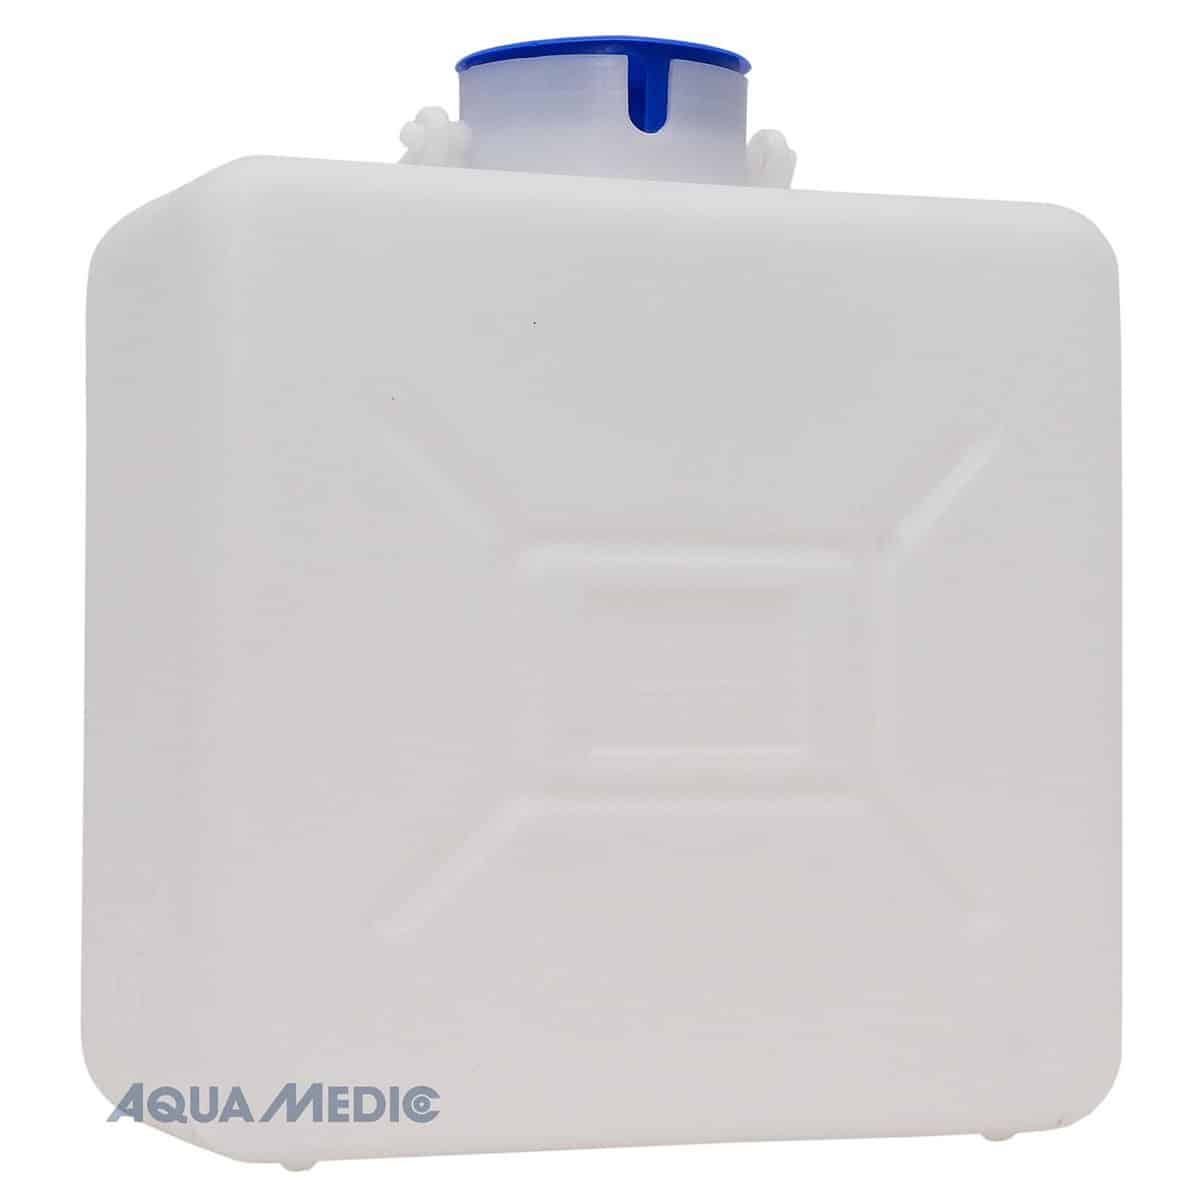 Aqua Medic refill depot 16 Liter mit Ausschnitt und Steckkappe